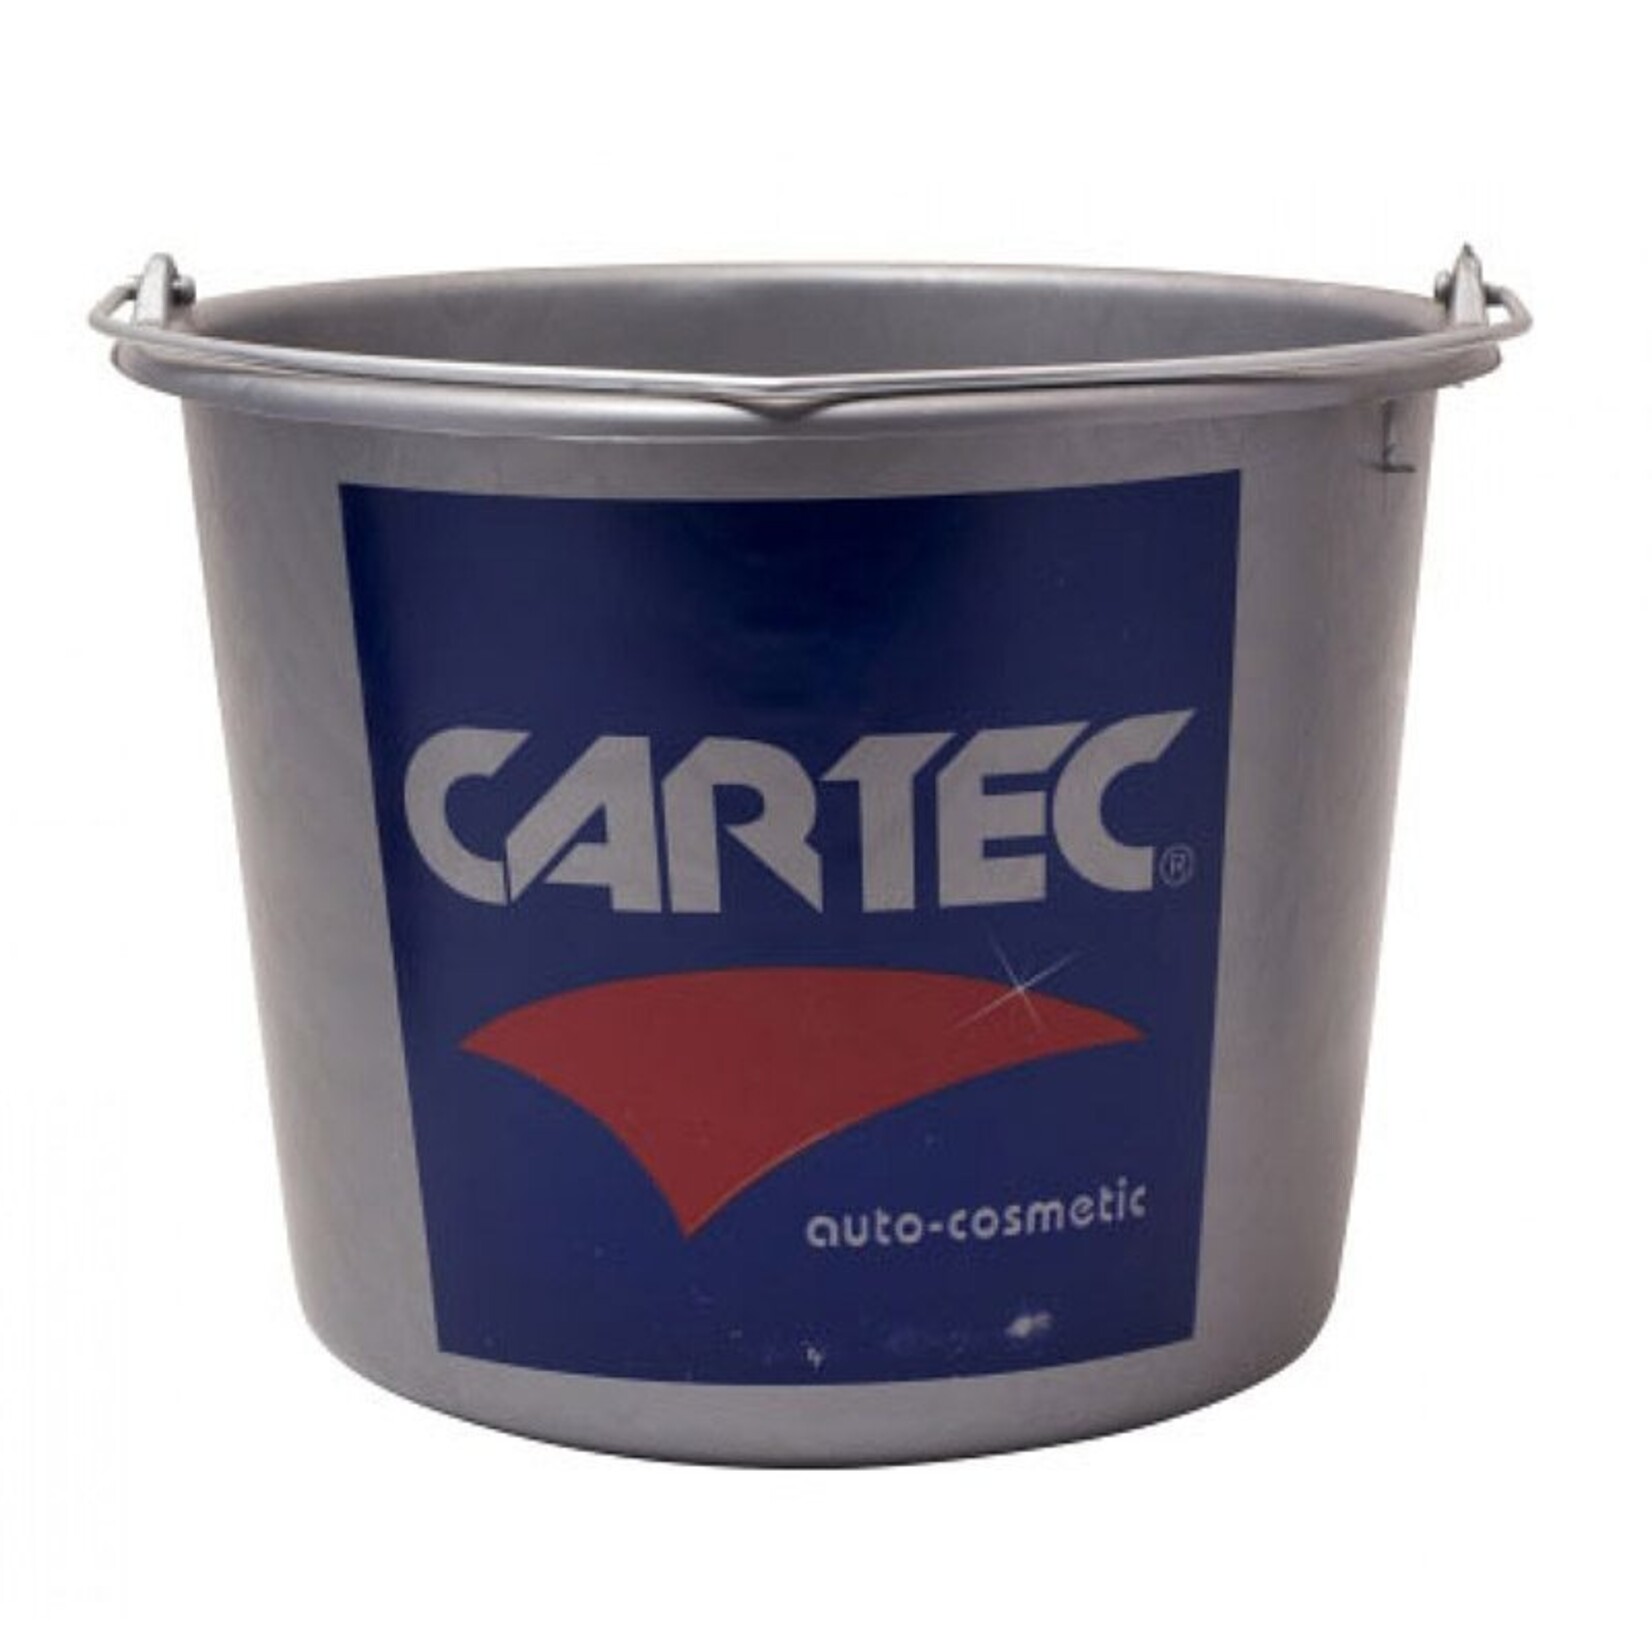 CARTEC Wasemmer 12 liter met Cartec logo.